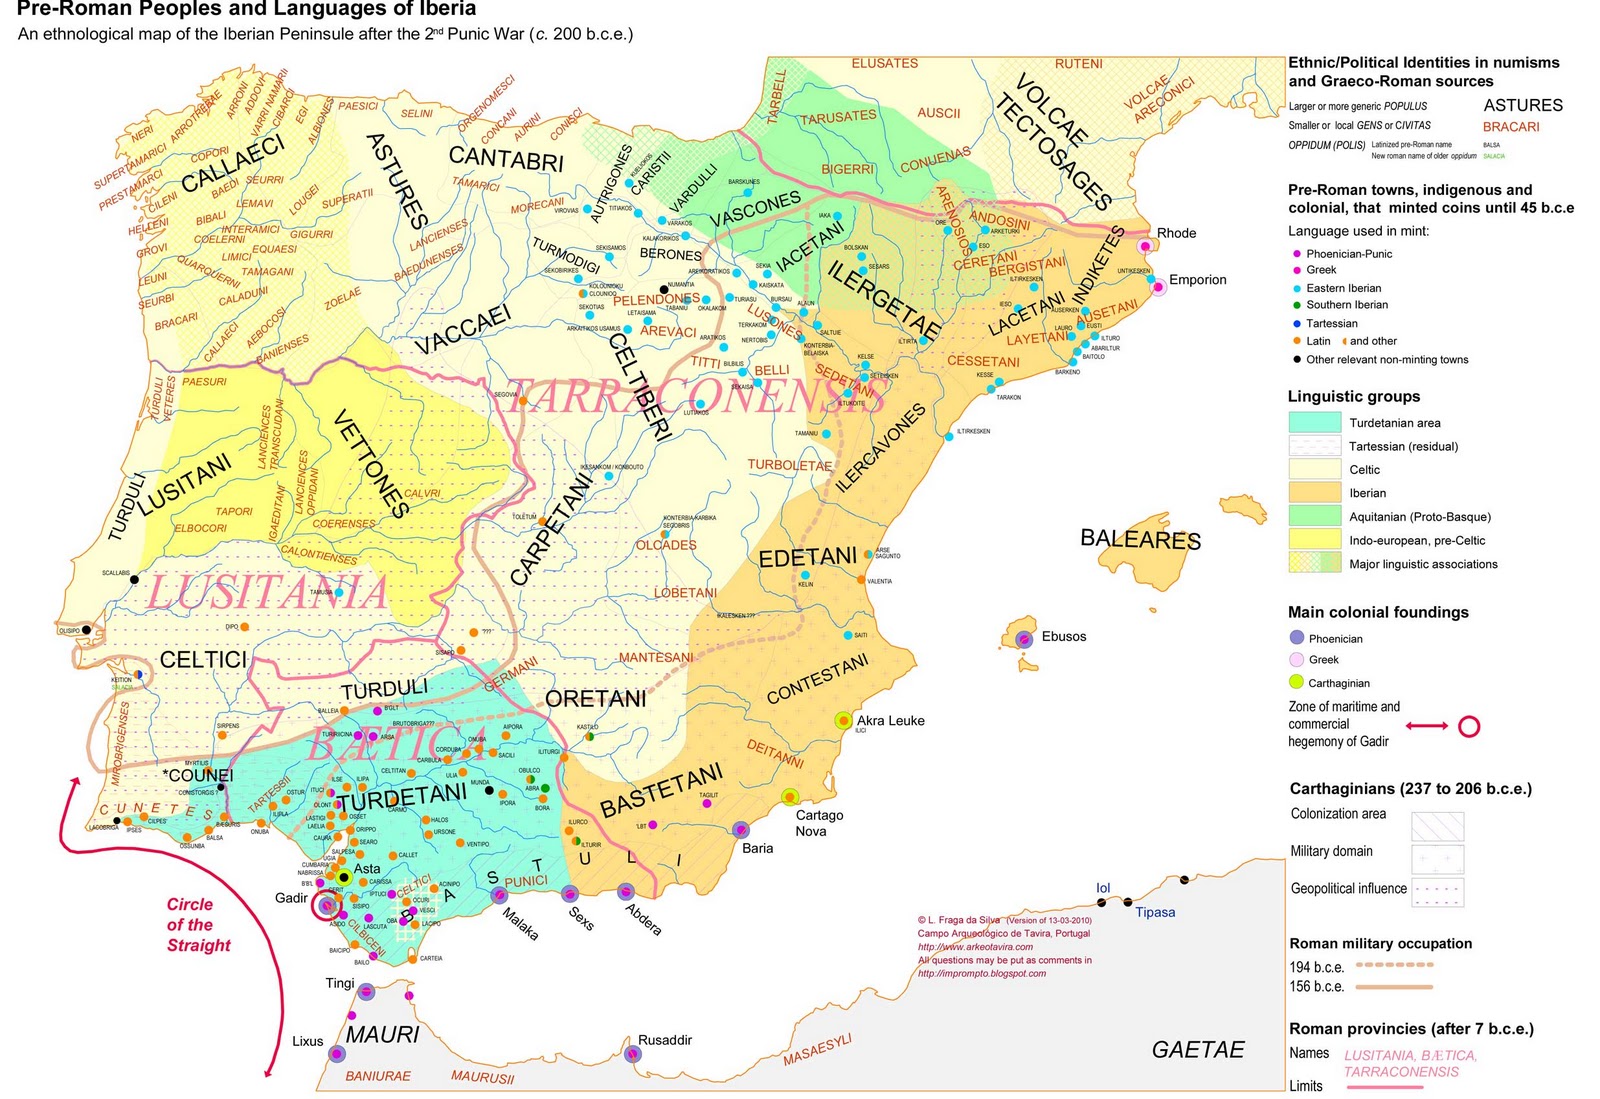 Plano de los diferentes pueblos y reinos pre-rromanos de la Península Ibérica en torno al 200 a.C.